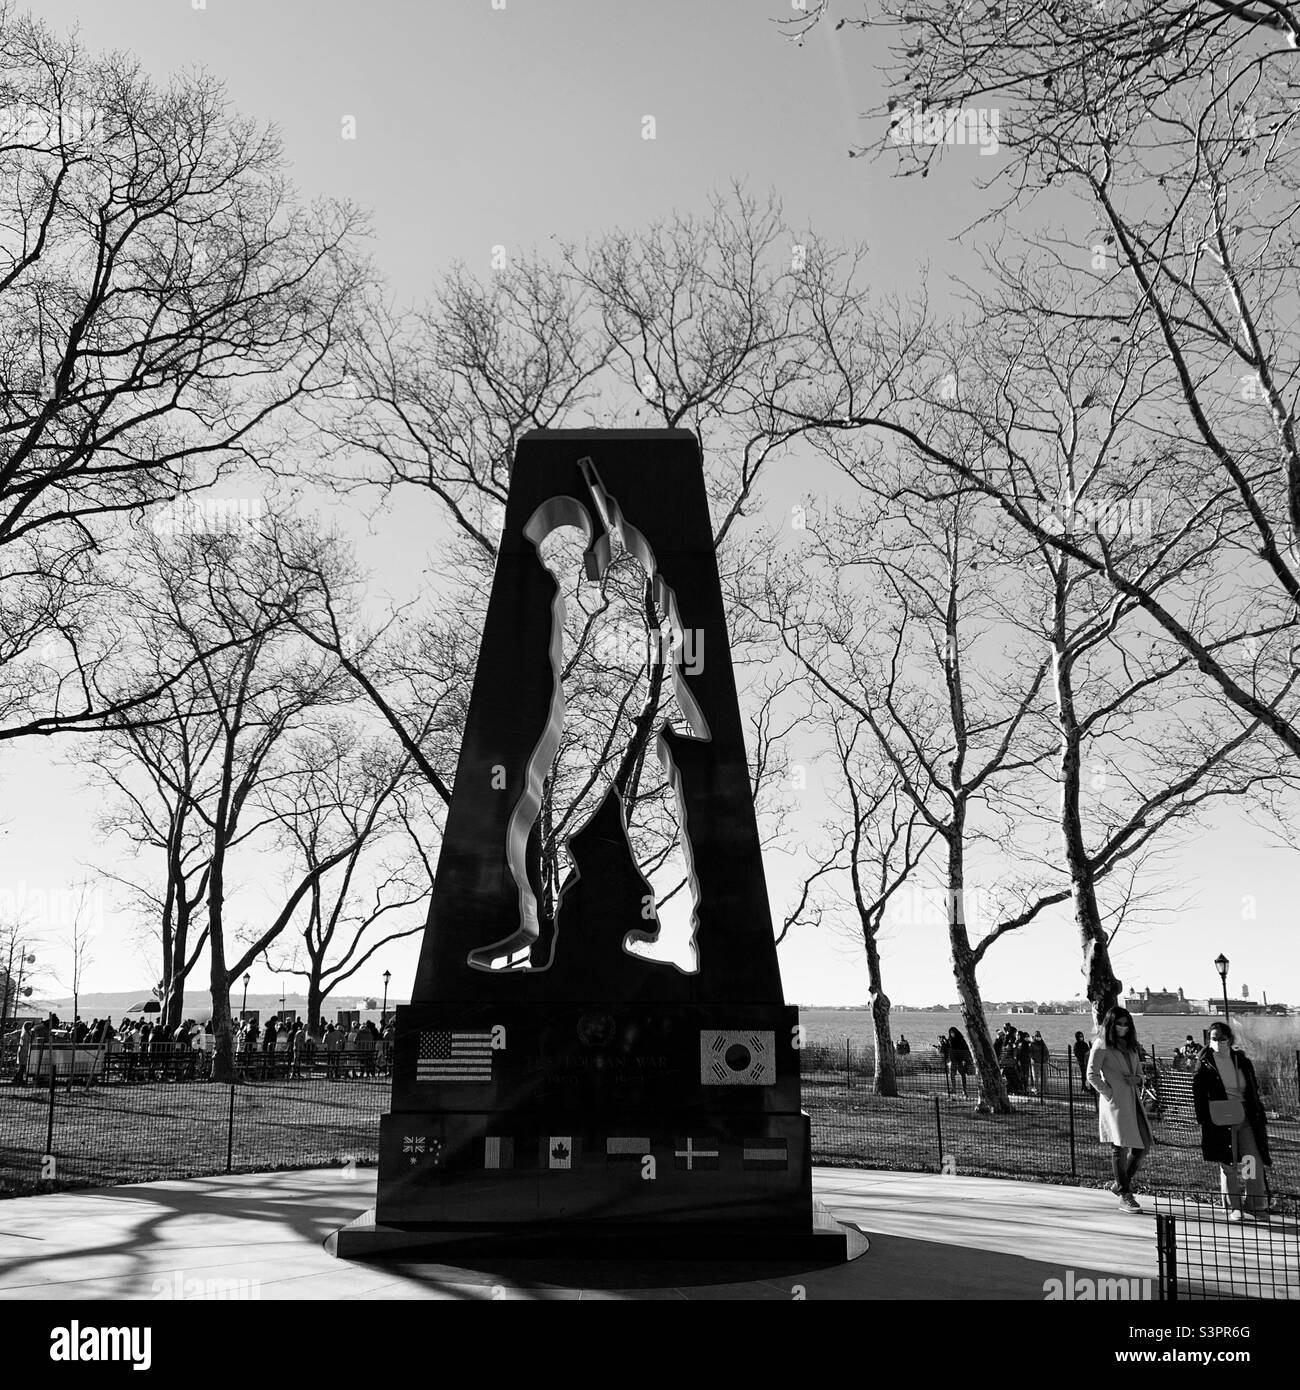 December, 2021, New York Korean War Veterans Memorial, The Battery, Lower Manhattan, New York, New York, United States Stock Photo